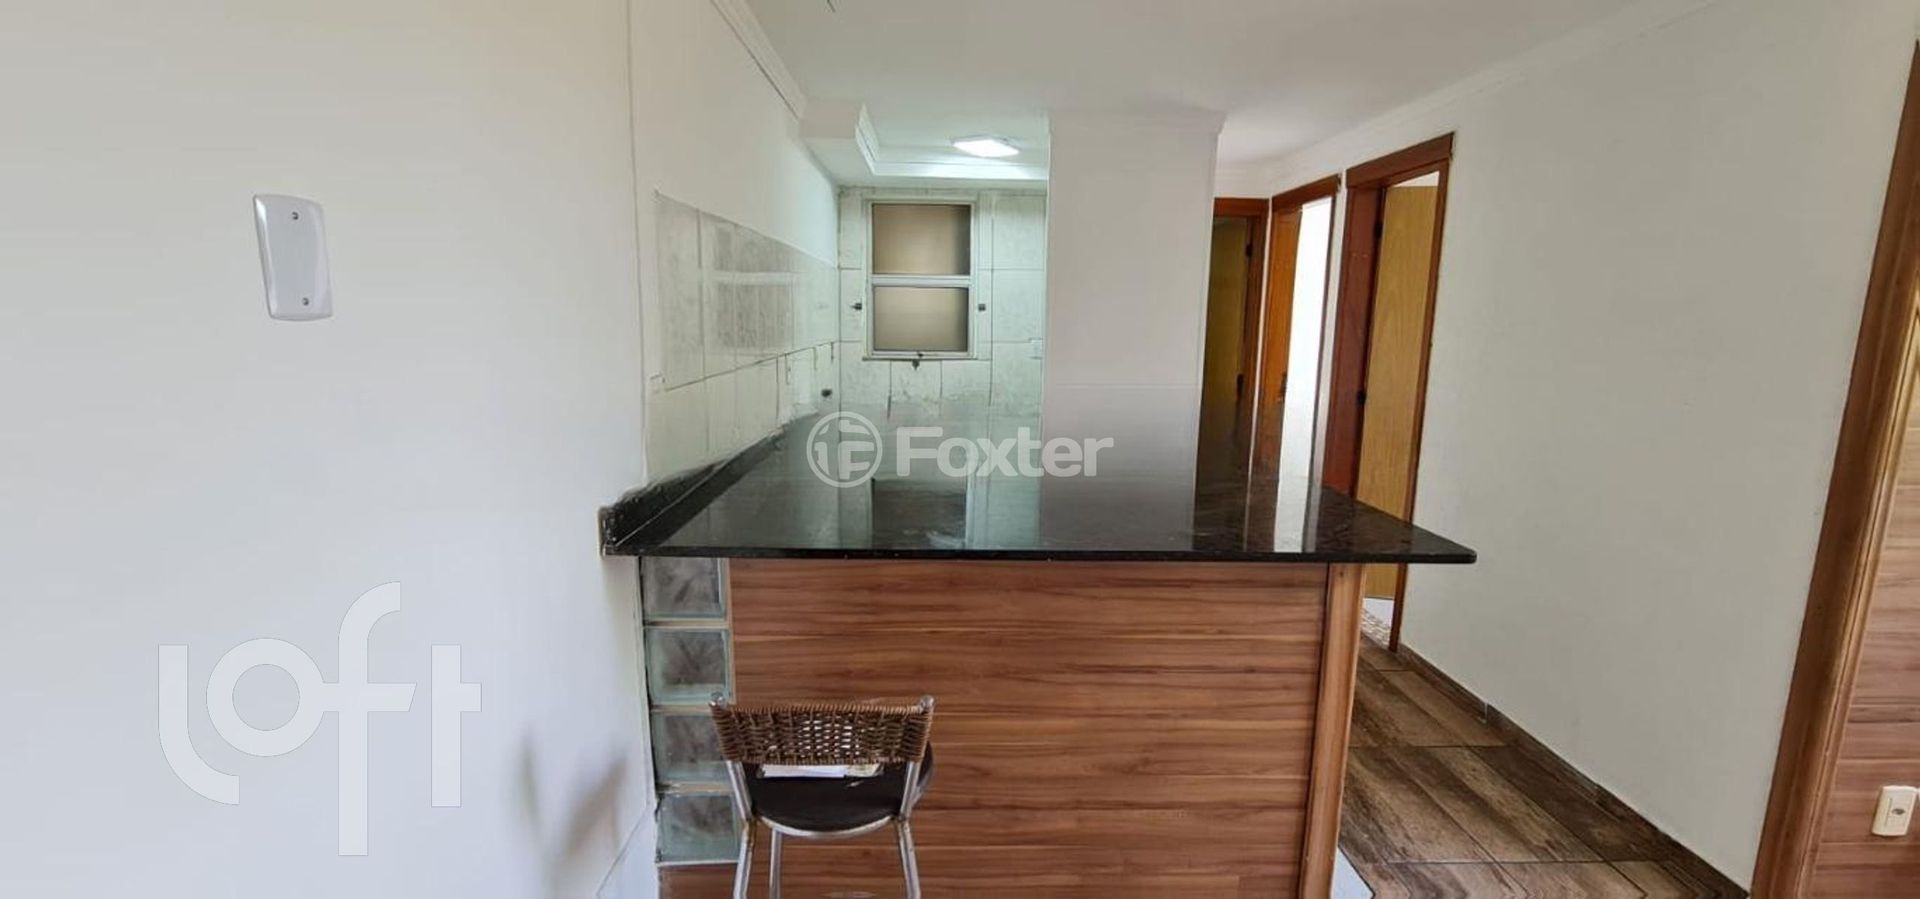 Apartamento 2 dorms à venda Rua Zulmiro Gomes da Silva, Olaria - Canoas